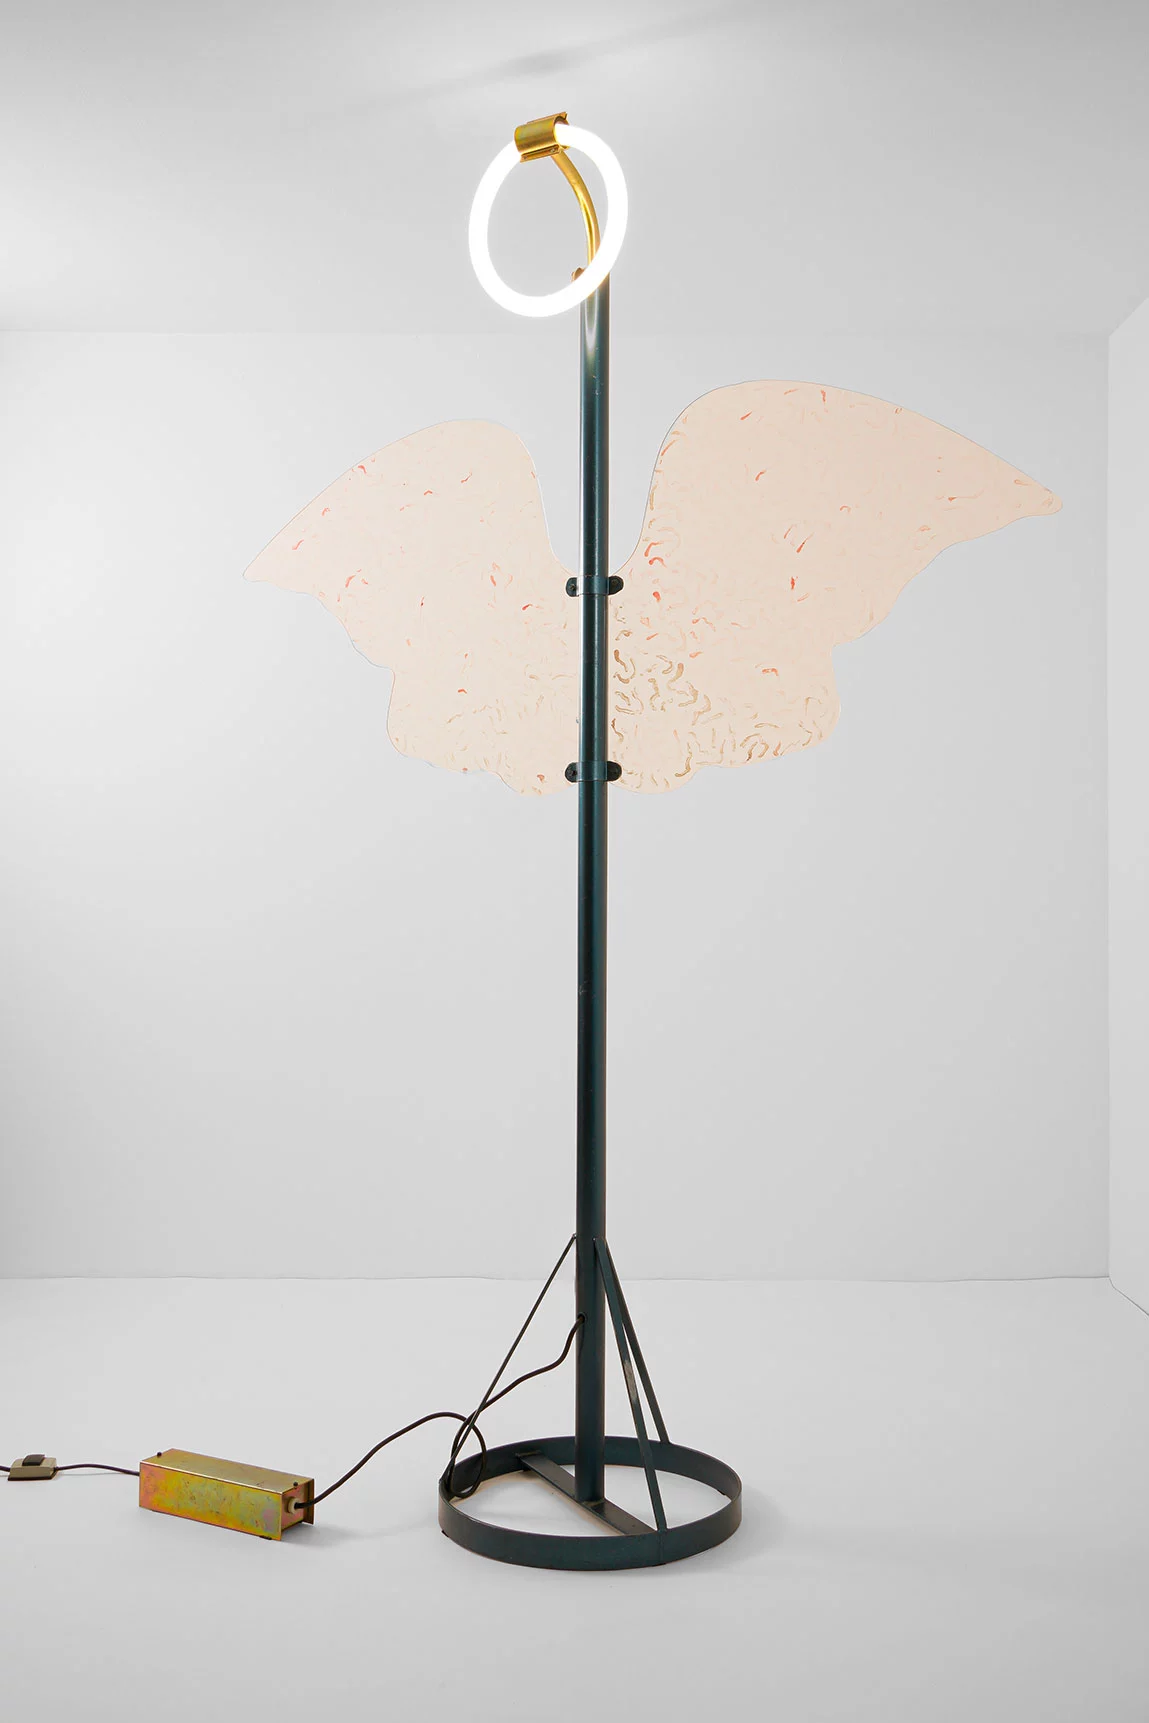 Arcangello Metropolitani - Ugo La Pietra - Floor light - Galerie kreo